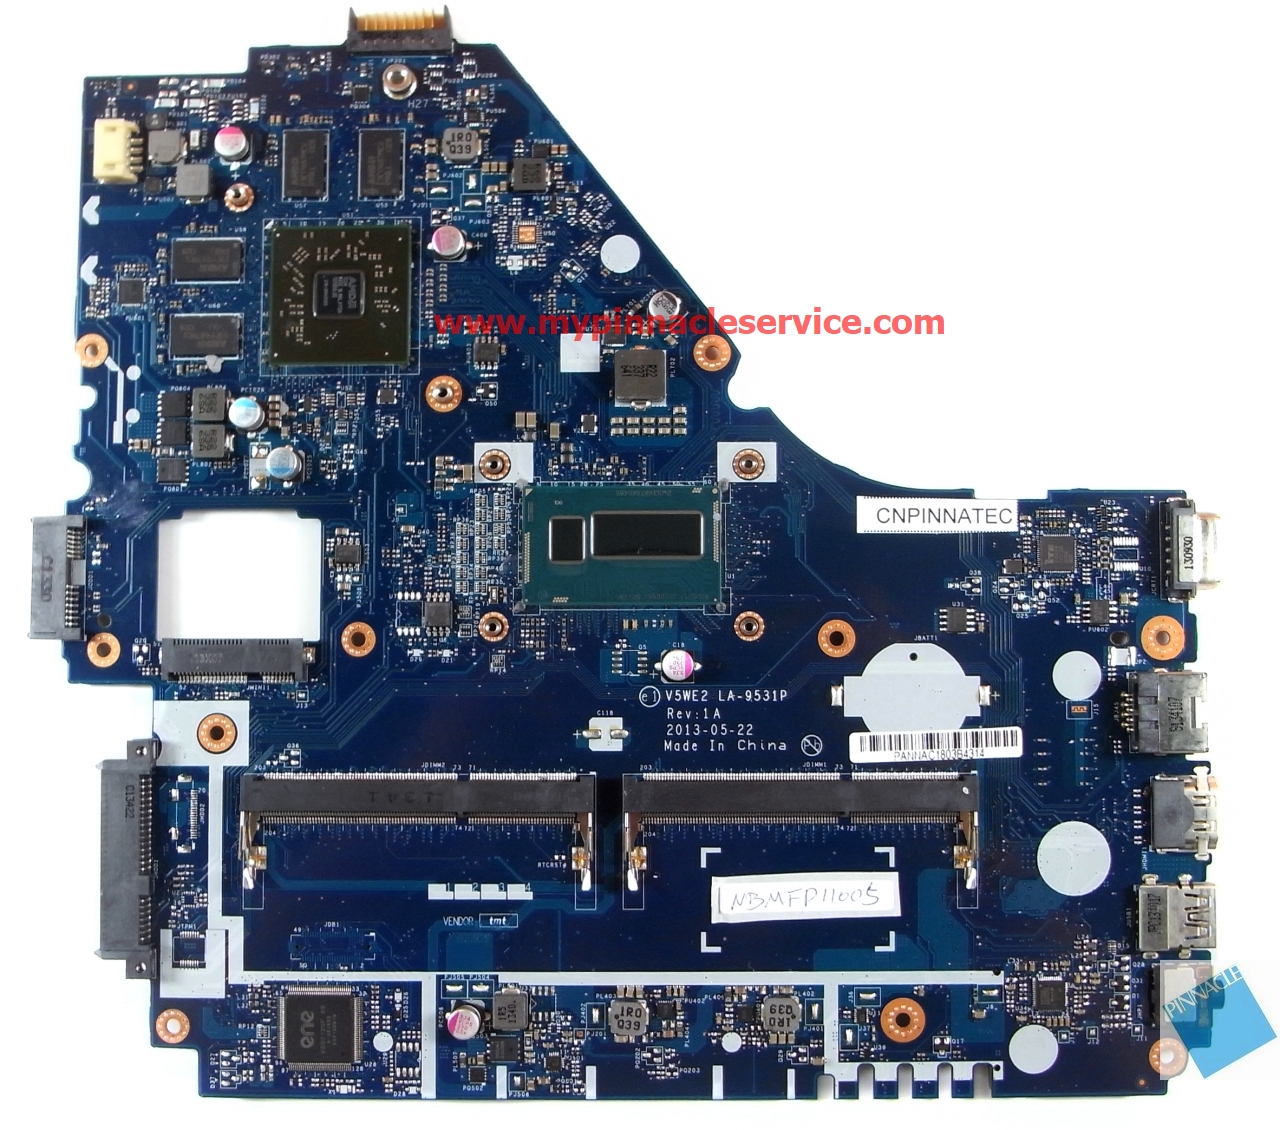 NBMFP11005 I5-4200U Motherboard for Acer Aspire E1-572G V5-561G LA-9531P